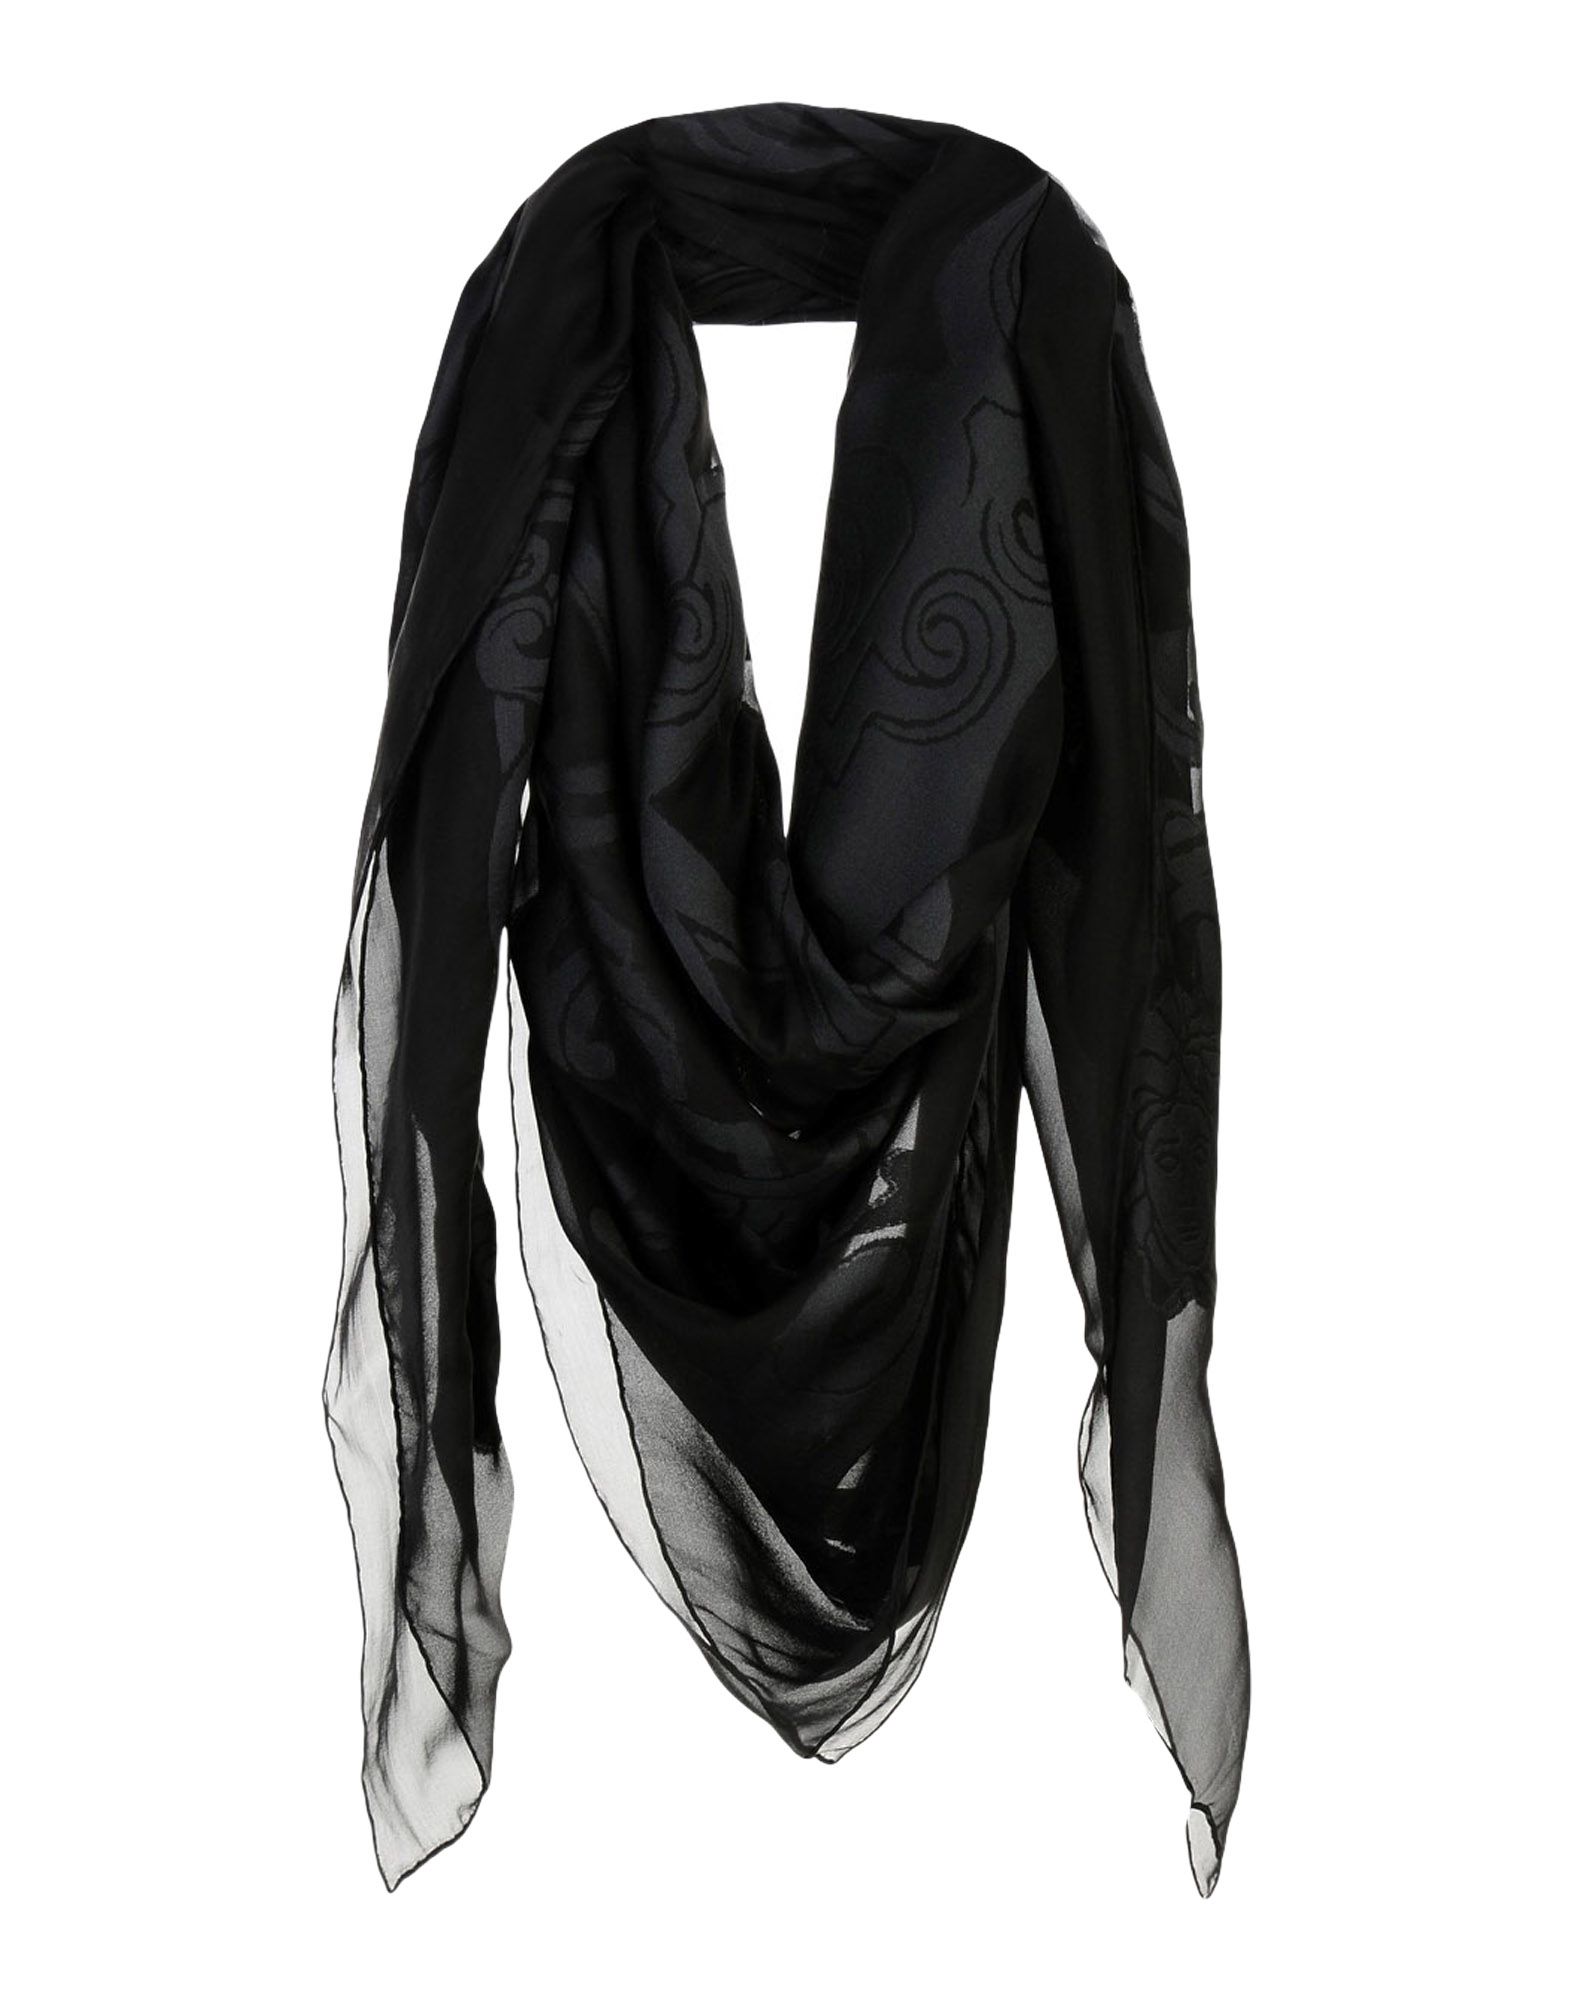 Черный платок 40. BOLONGARO Trevor платок. Платок Byblos черный. Платок Версаче. Чёрный шарф женский.